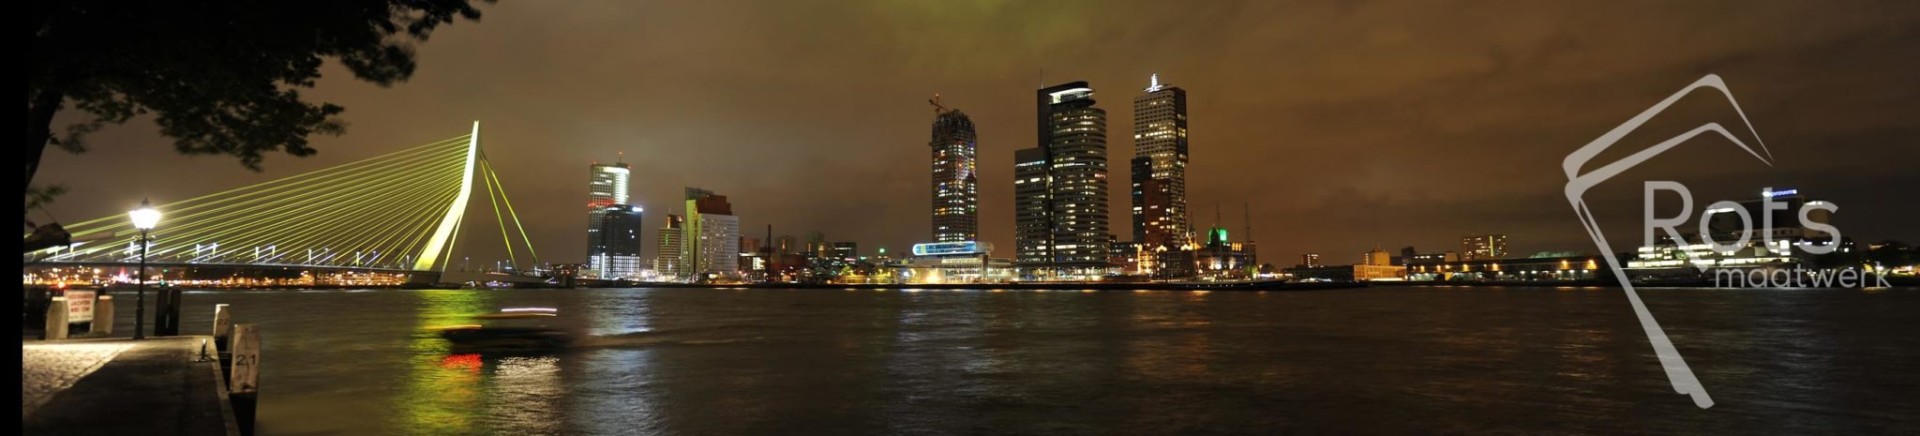 Lichtkunstwerk Rotterdam